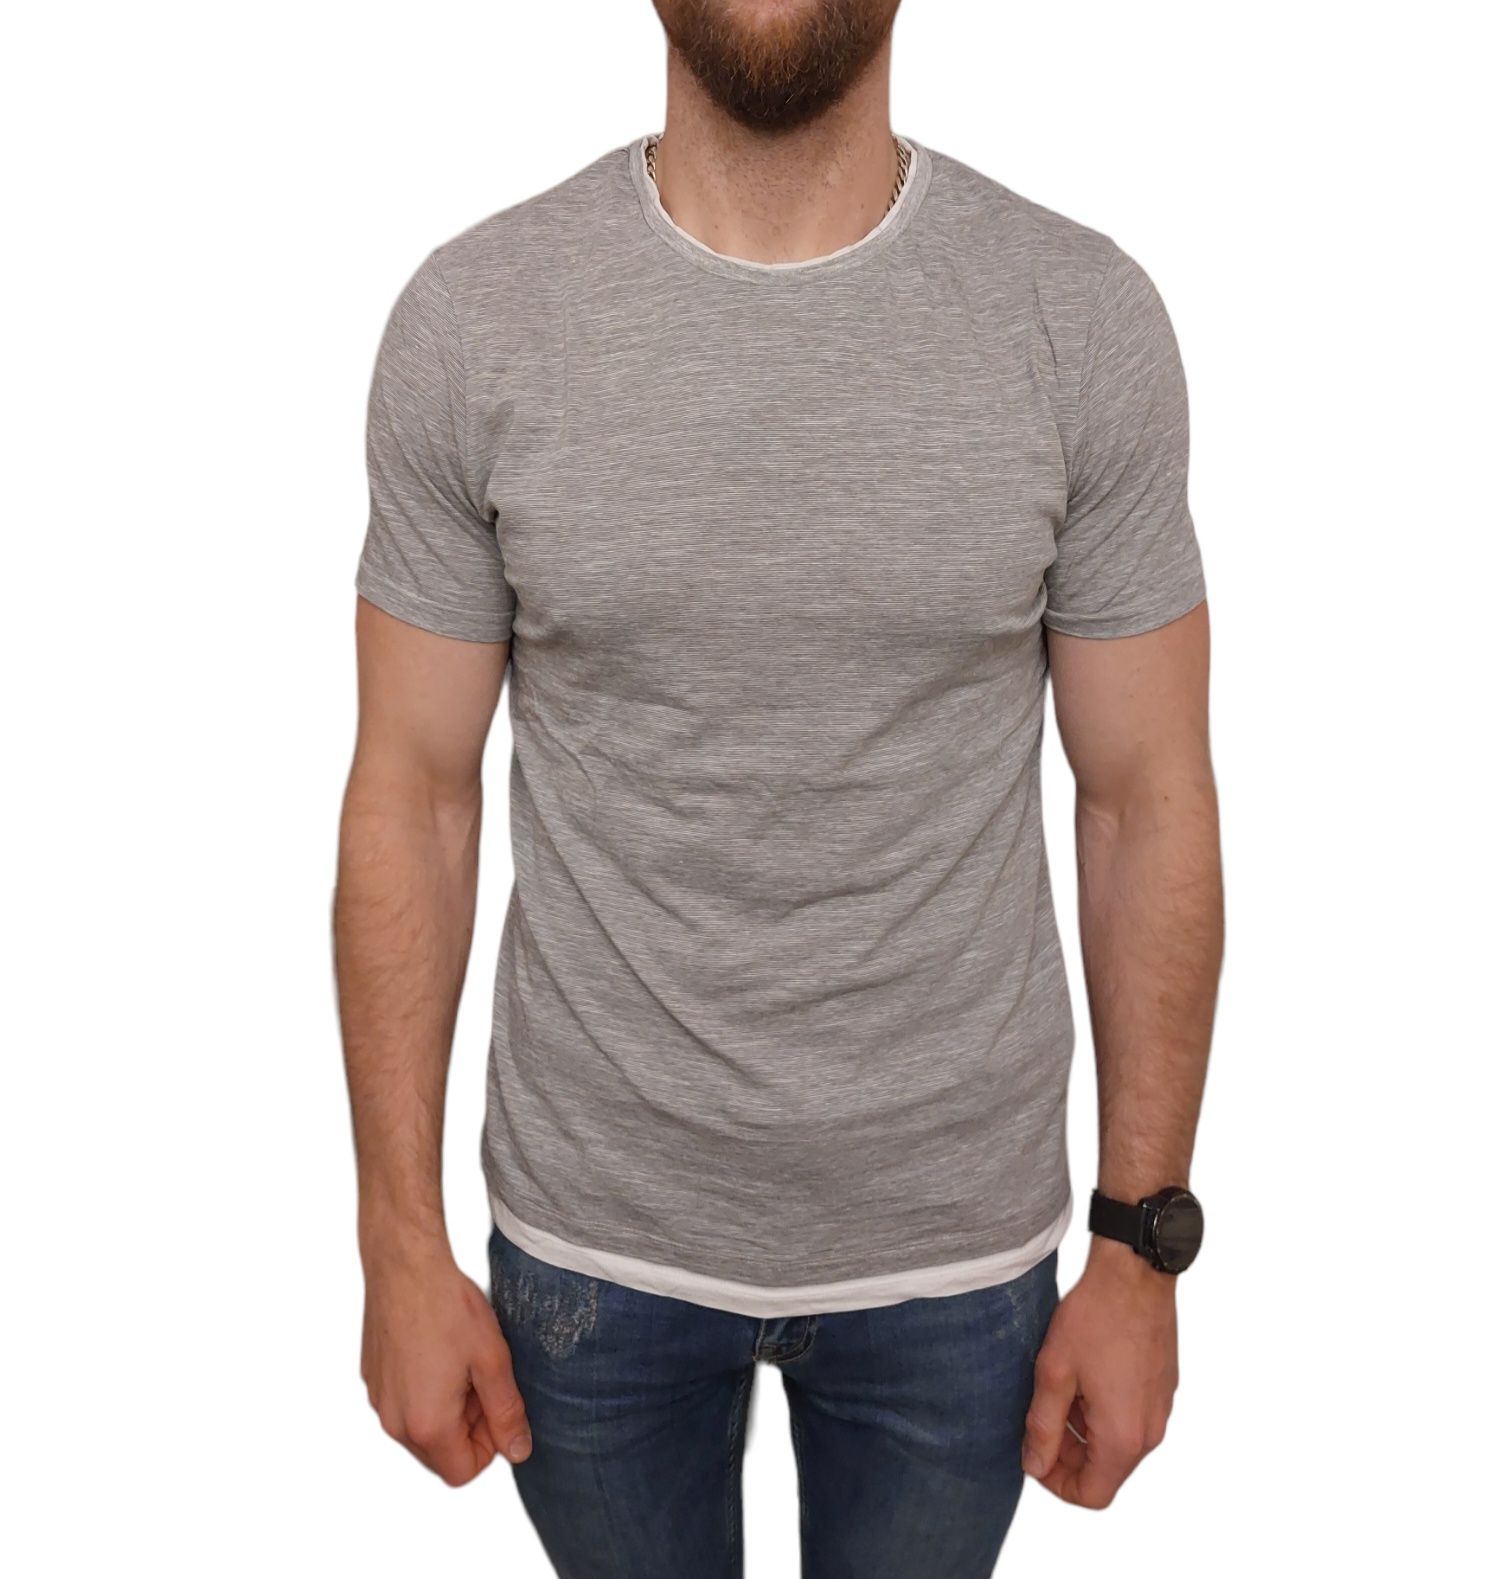 Koszulka męska szara t-shirt męski szary C&A rozmiar M 100% bawełna